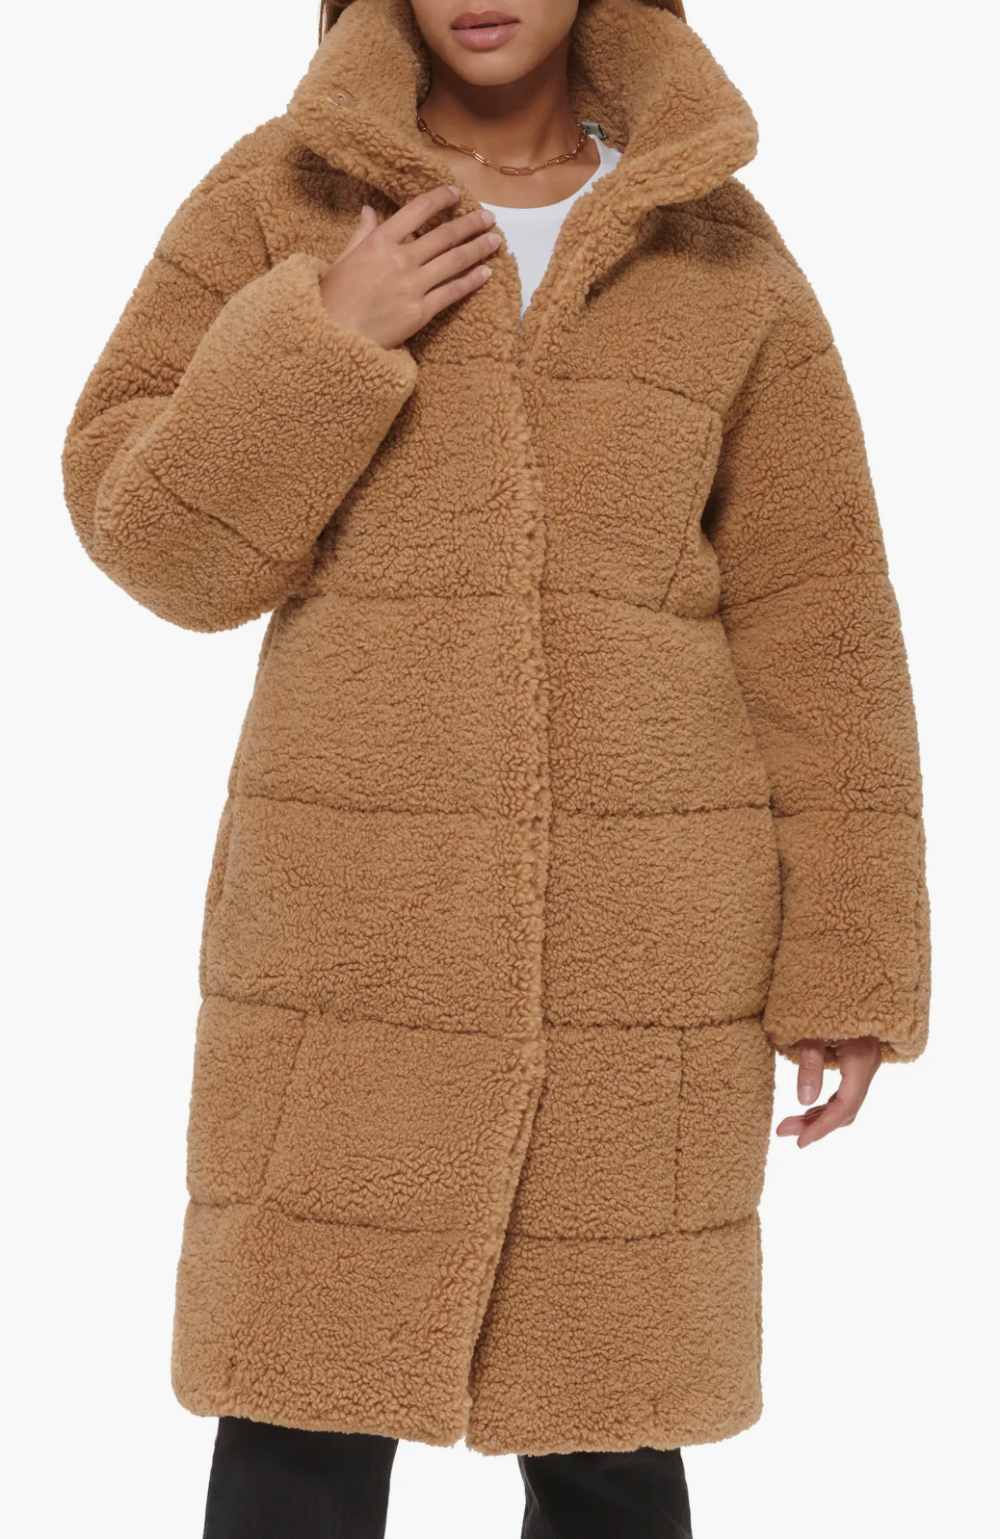 Levi's Quilted Fleece Long Teddy Coat